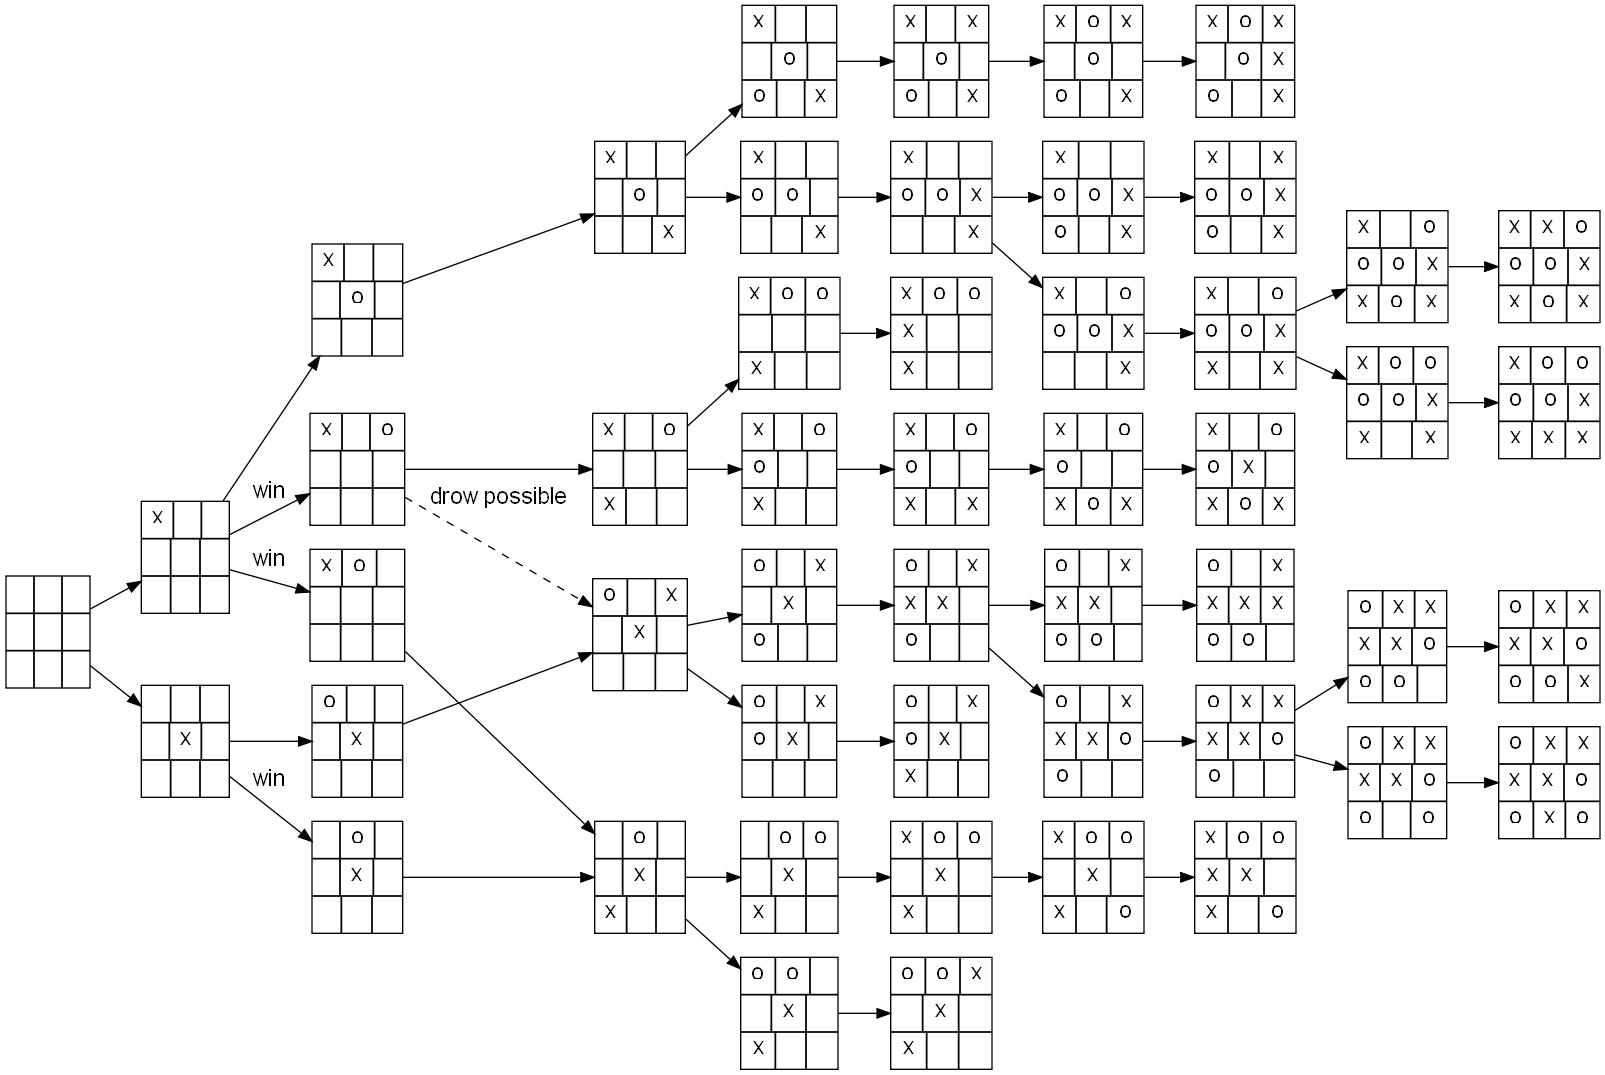 Ациклический граф позиций для игры крестики-нолики. Картинка из Википедии.